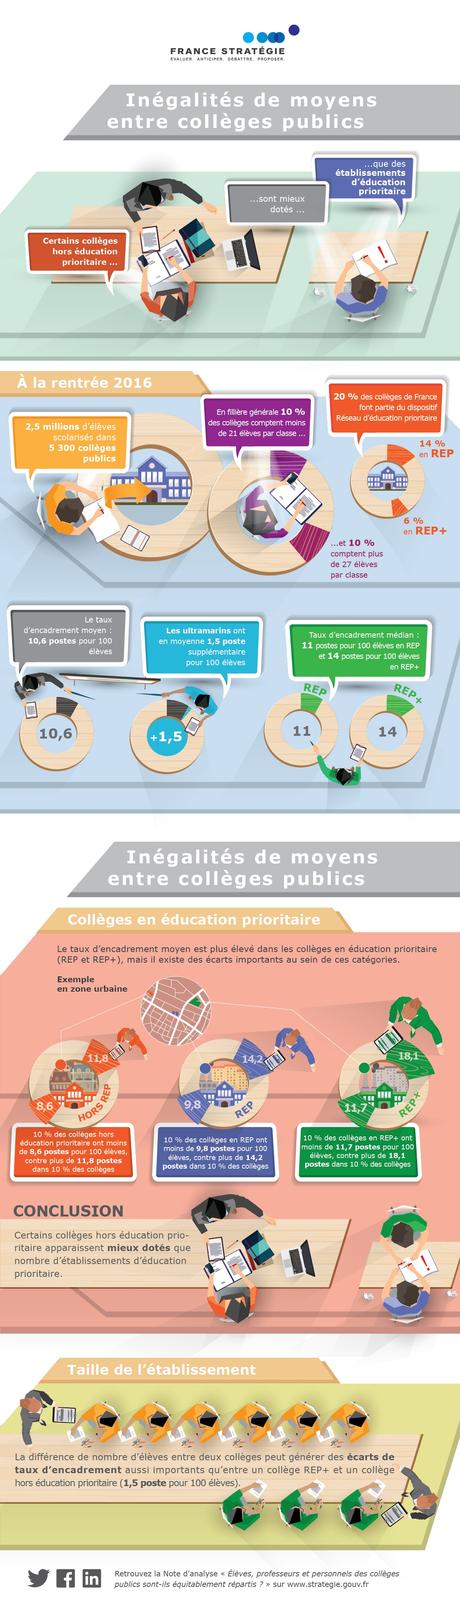 Inégalités entre collèges publics en France